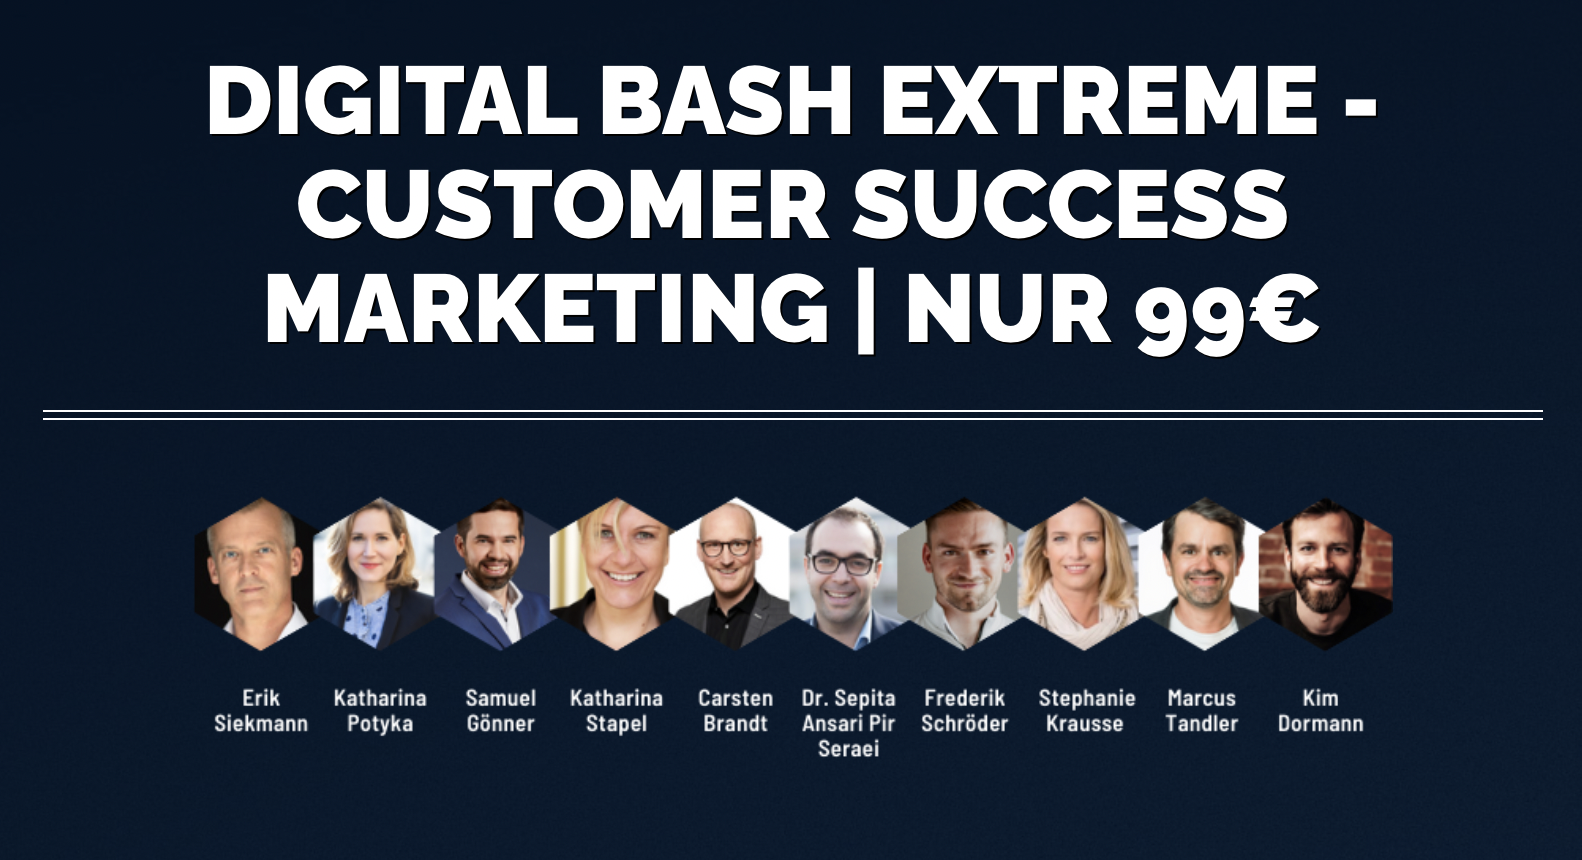 Digital Bash: Customer Success Marketing für klein- und mittelständische Firmen